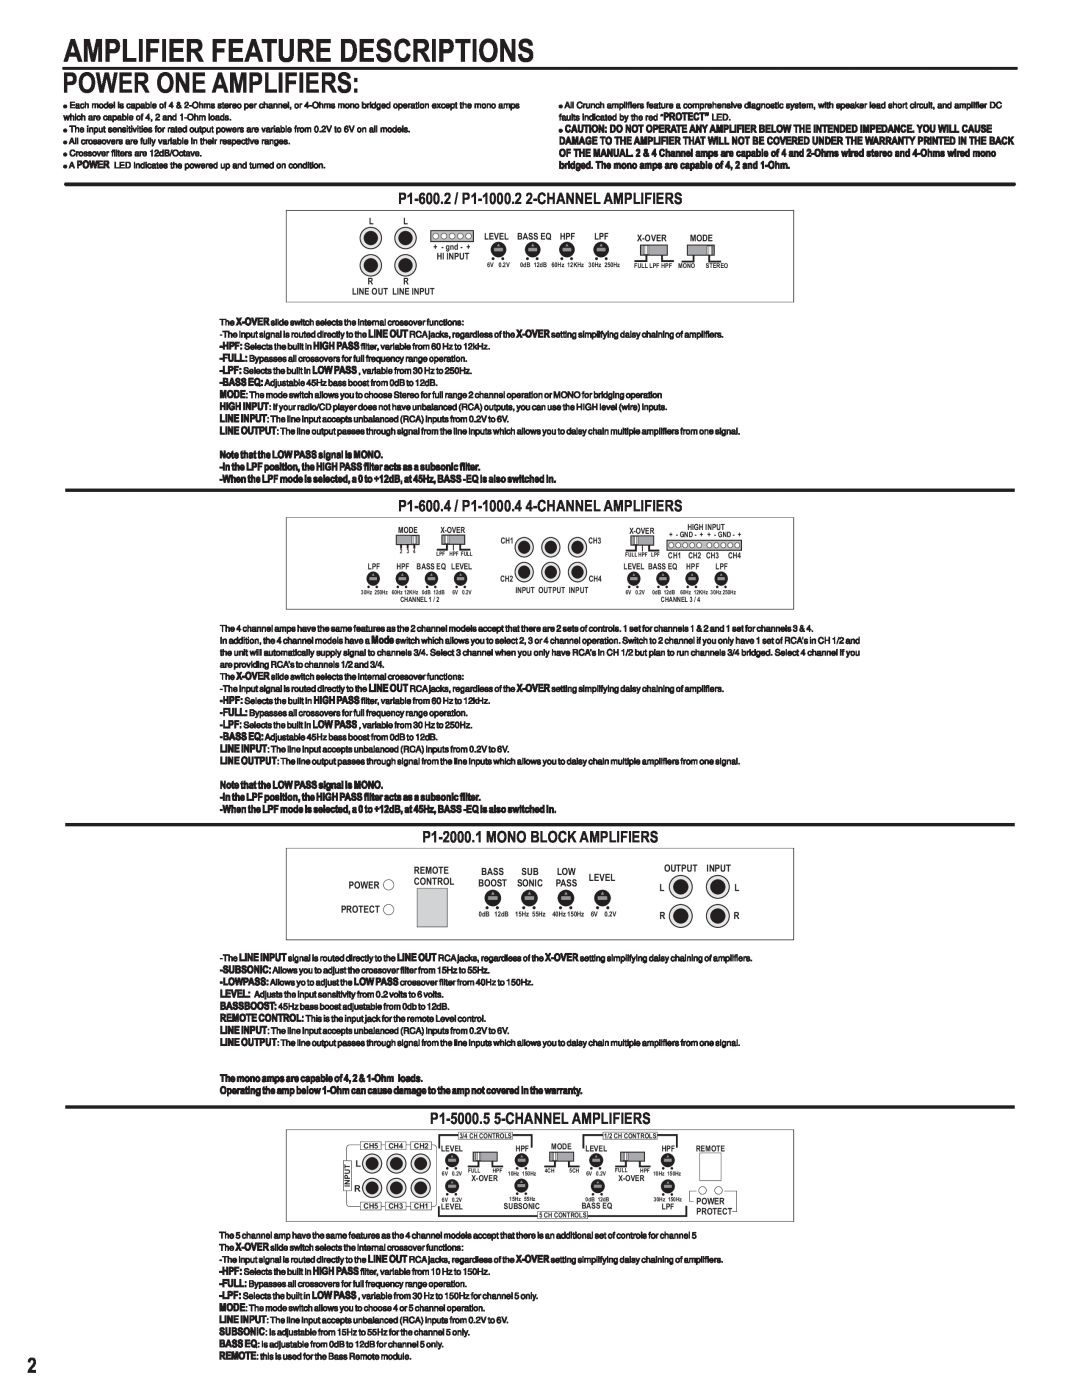 Maxxsonics P1-1000.4, P1-5000.5, P1-600.4, P1-1000.2, P1-600.2, P1-2000.1 Amplifier Feature Descriptions, Power One Amplifiers 